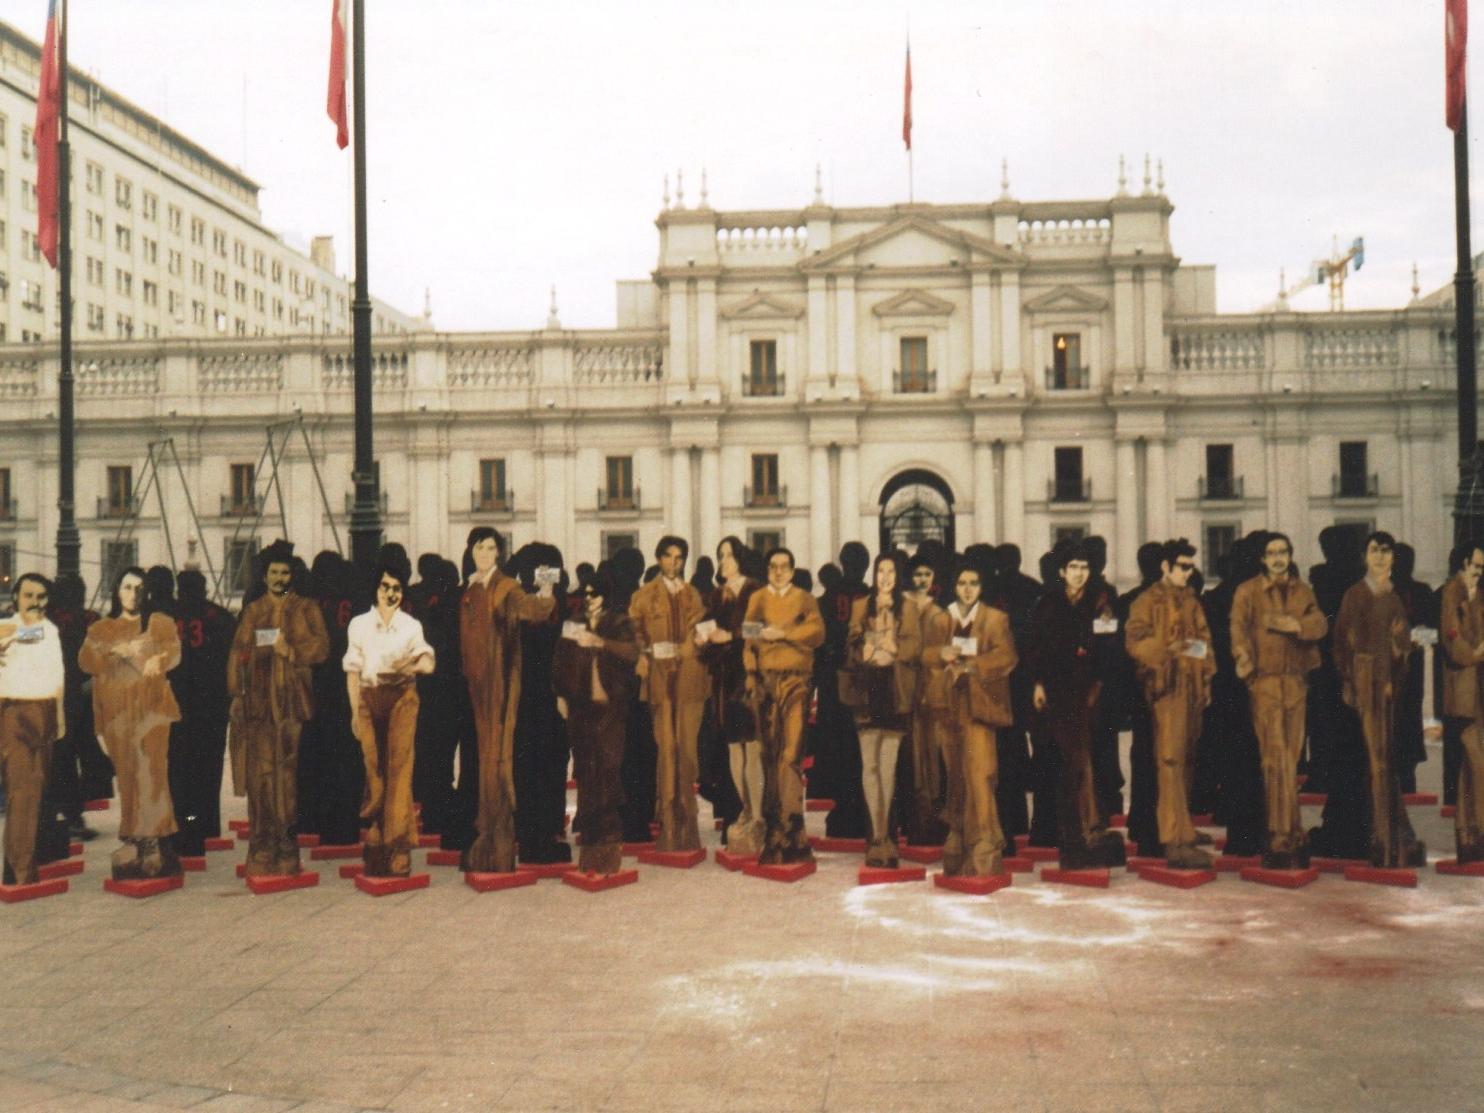 Fotografía de siluetas de personas hechas en cartón, frente al Palacio de La Moneda.